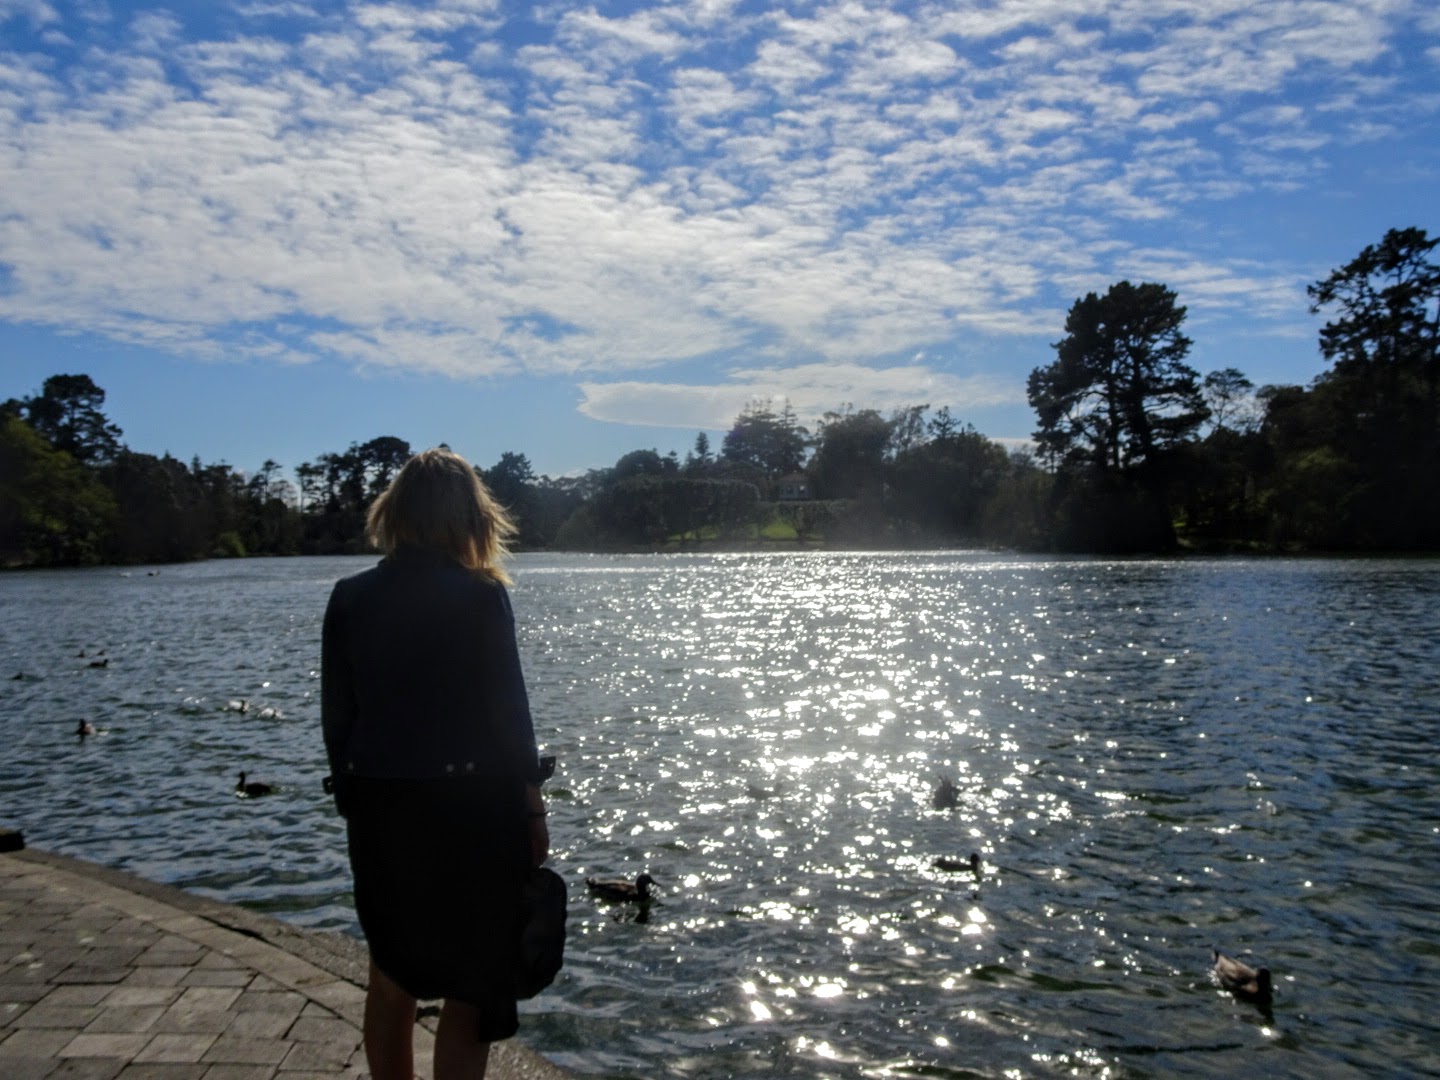 Girl looking at lake